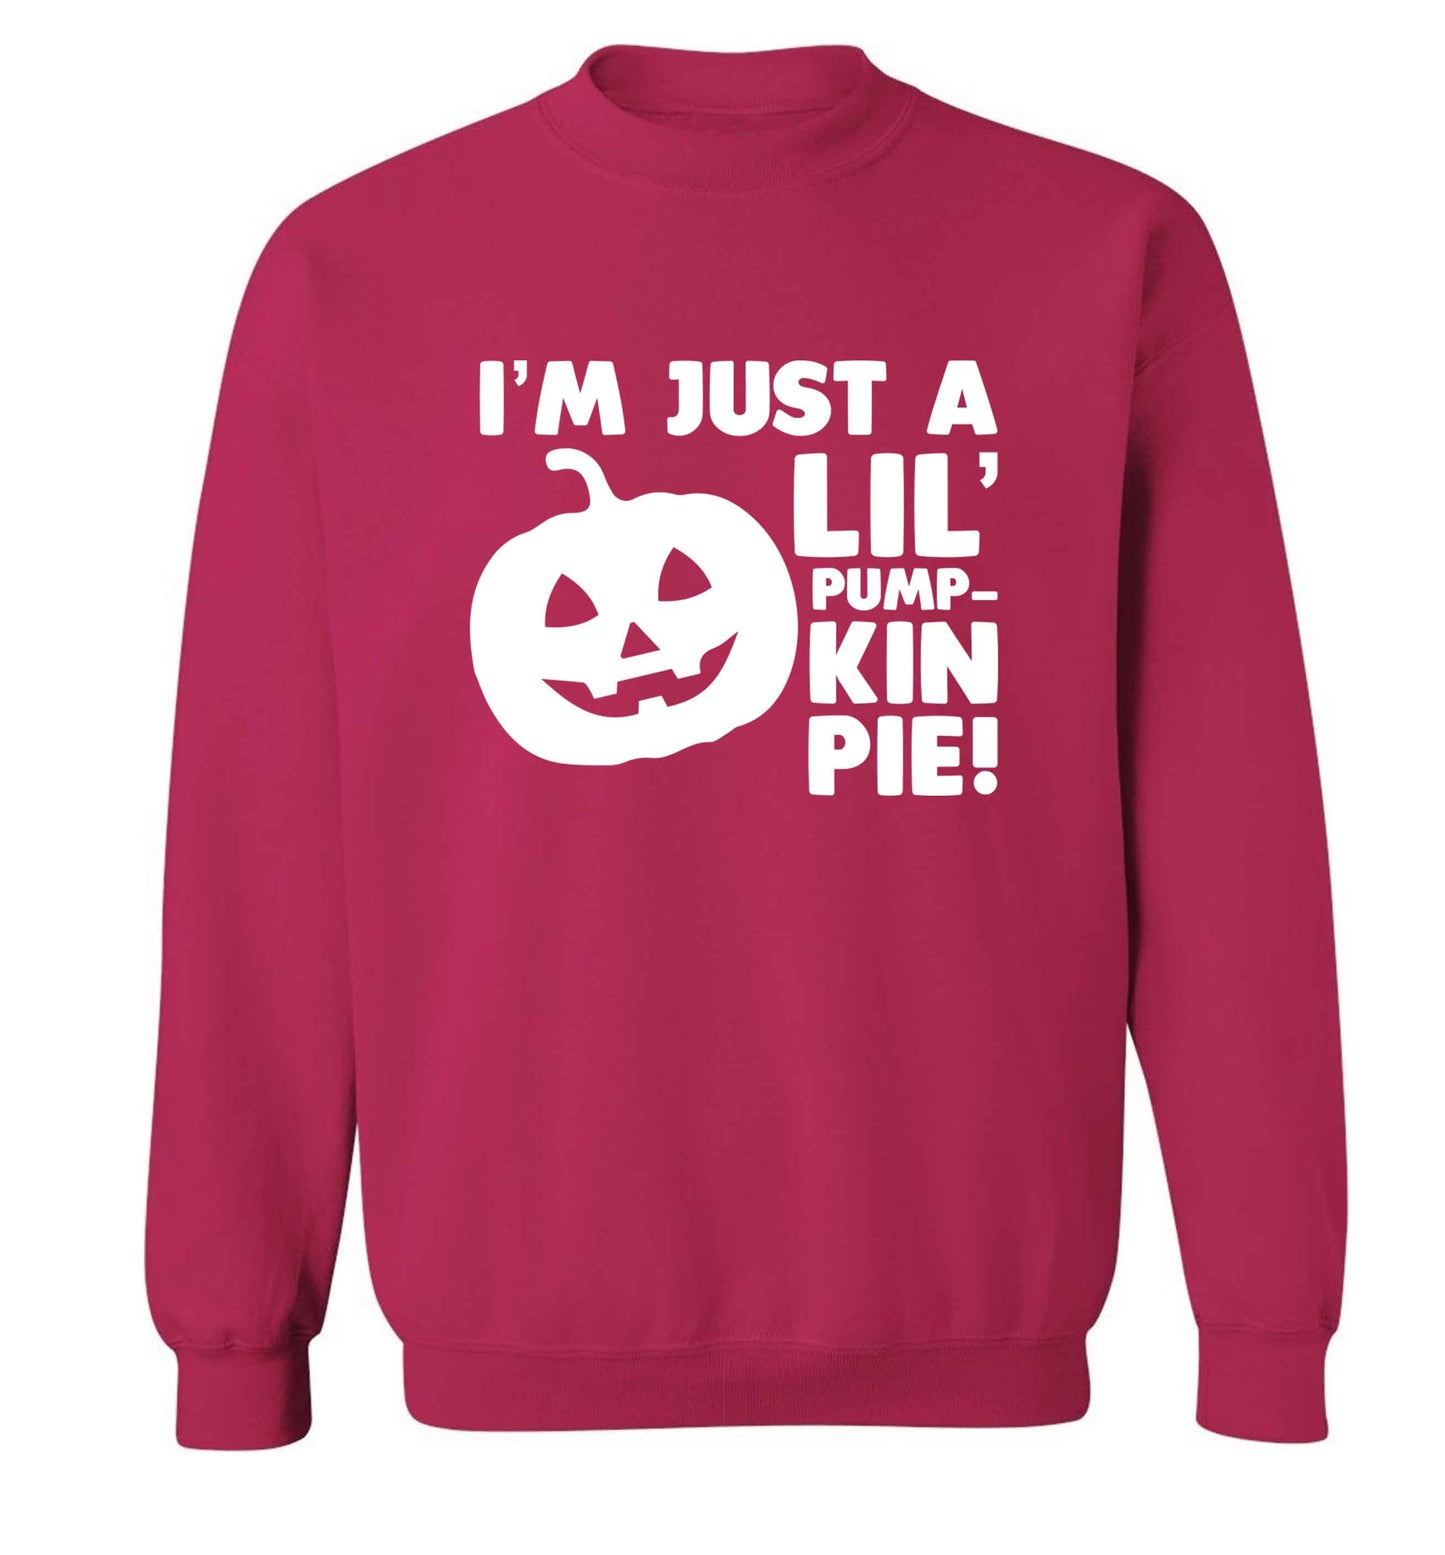 I'm just a lil' pumpkin pie adult's unisex pink sweater 2XL